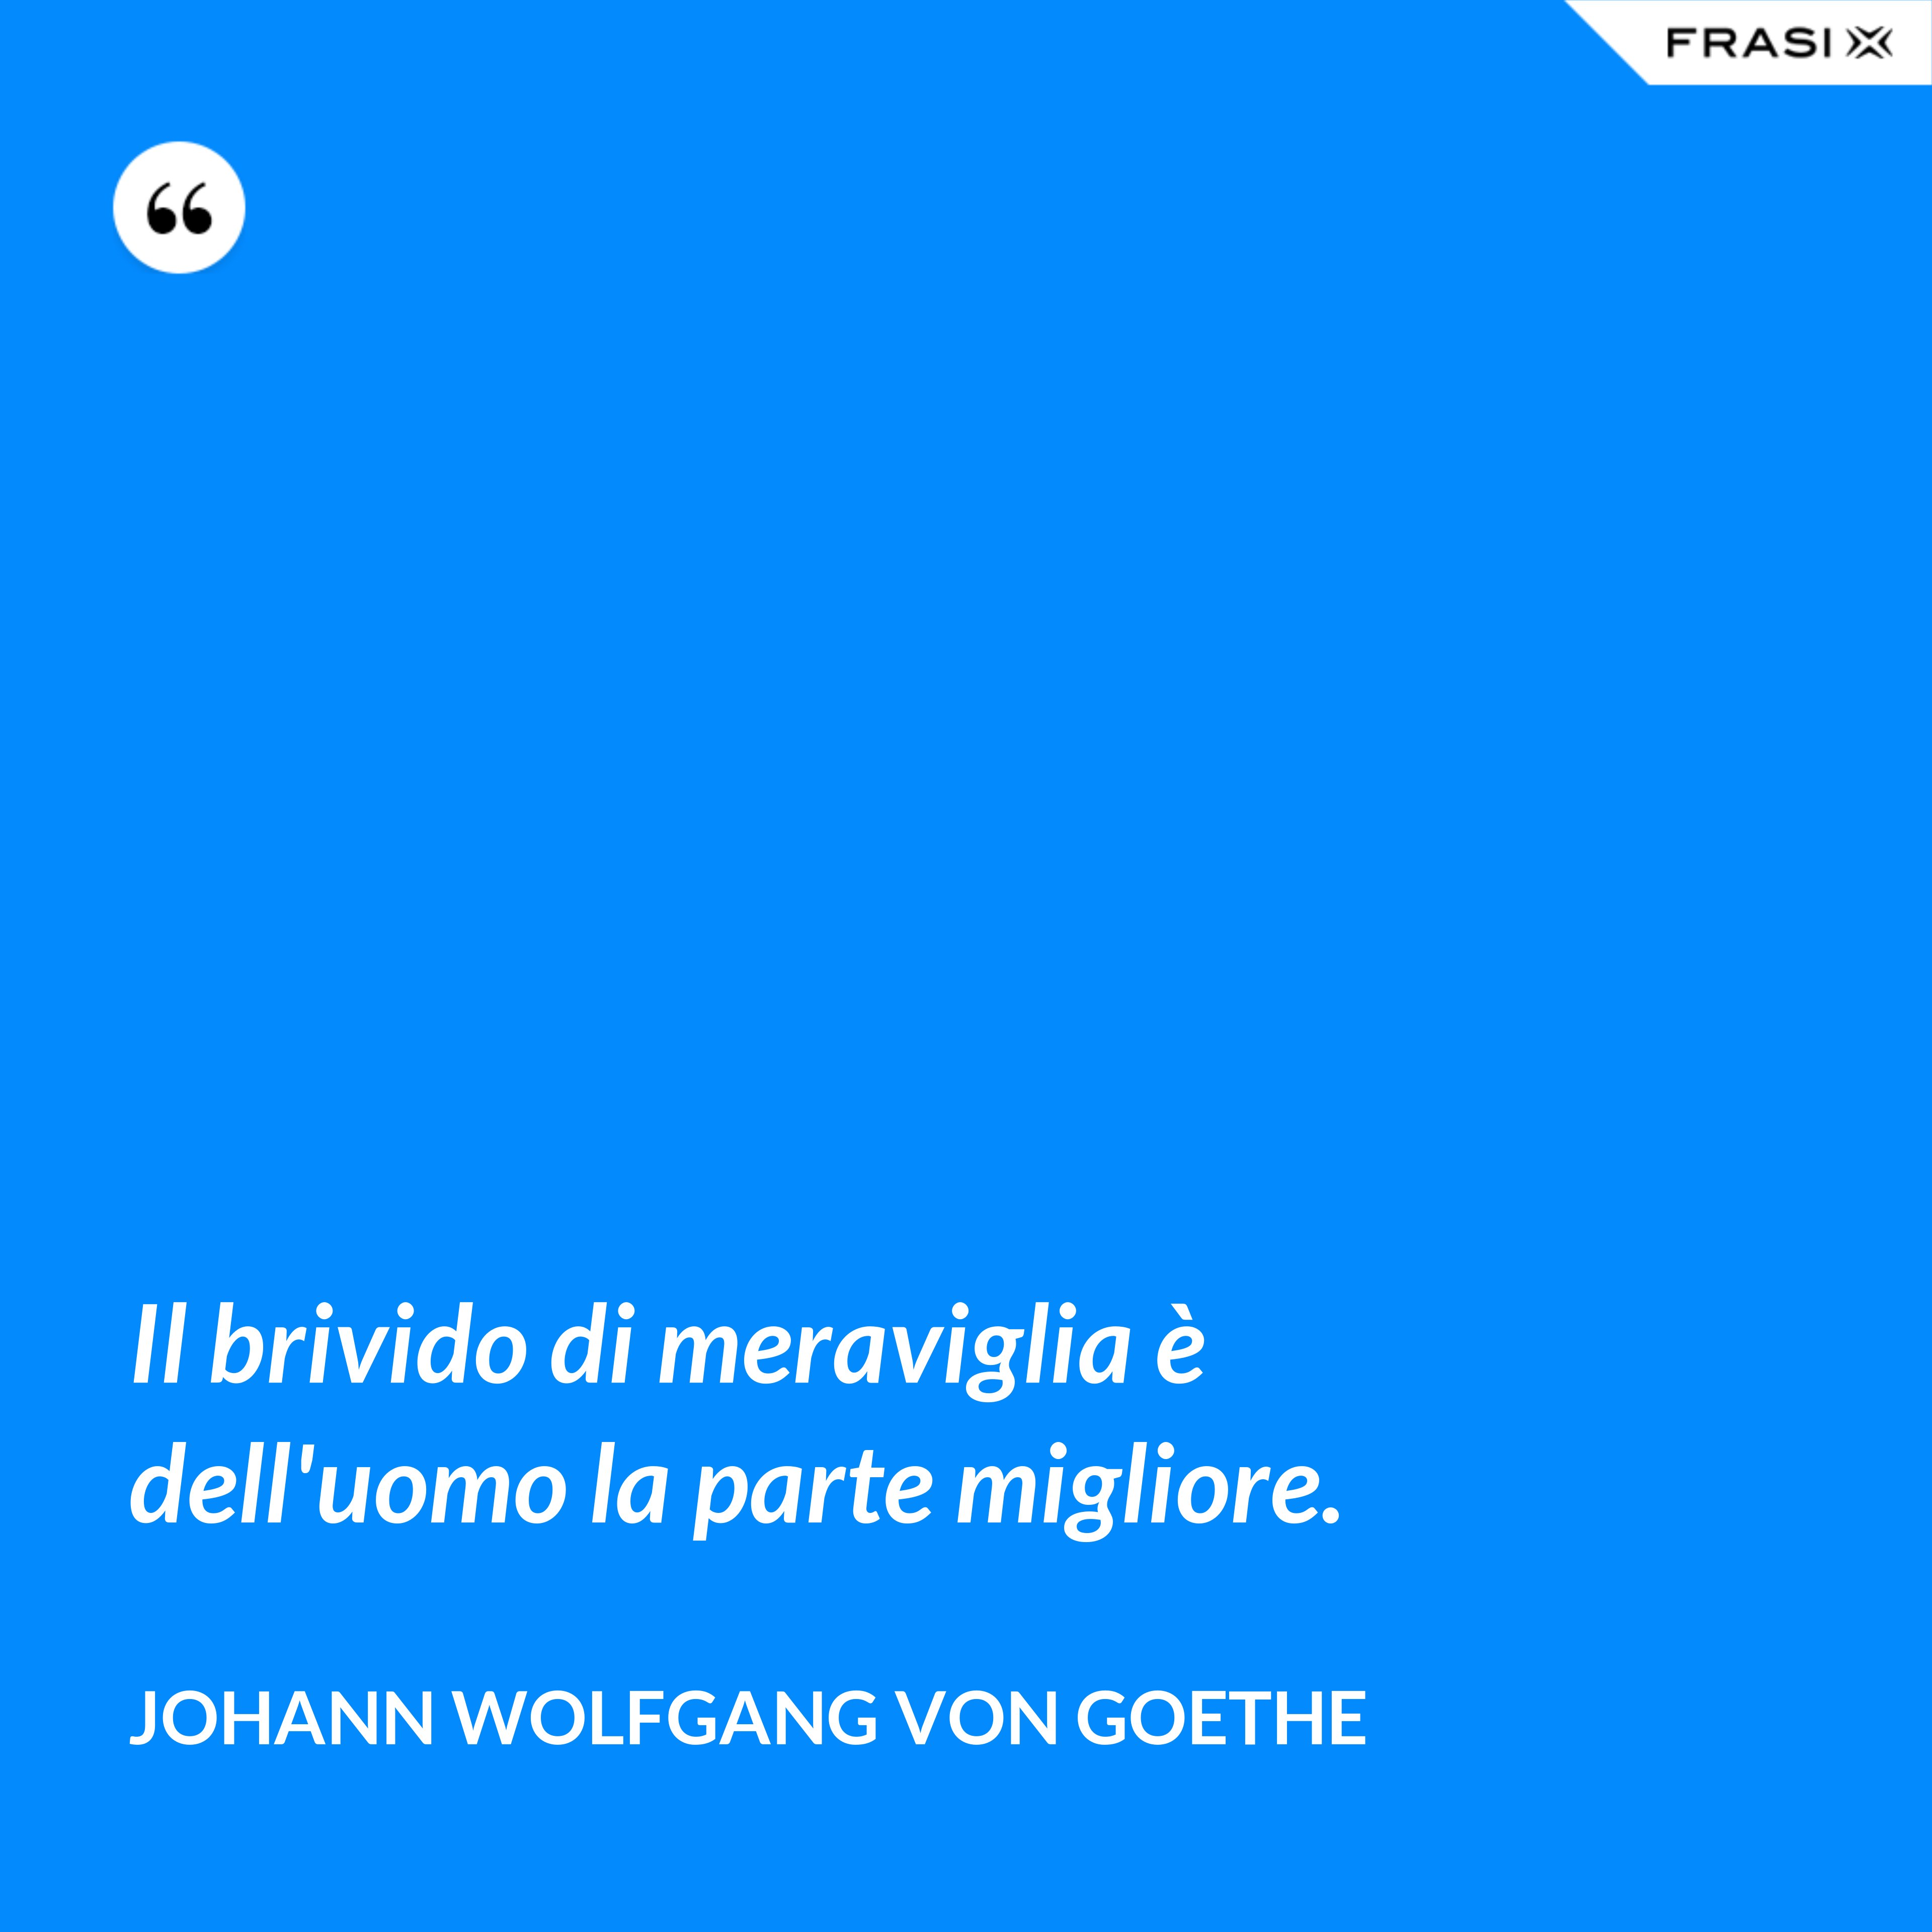 Il brivido di meraviglia è dell'uomo la parte migliore. - Johann Wolfgang von Goethe